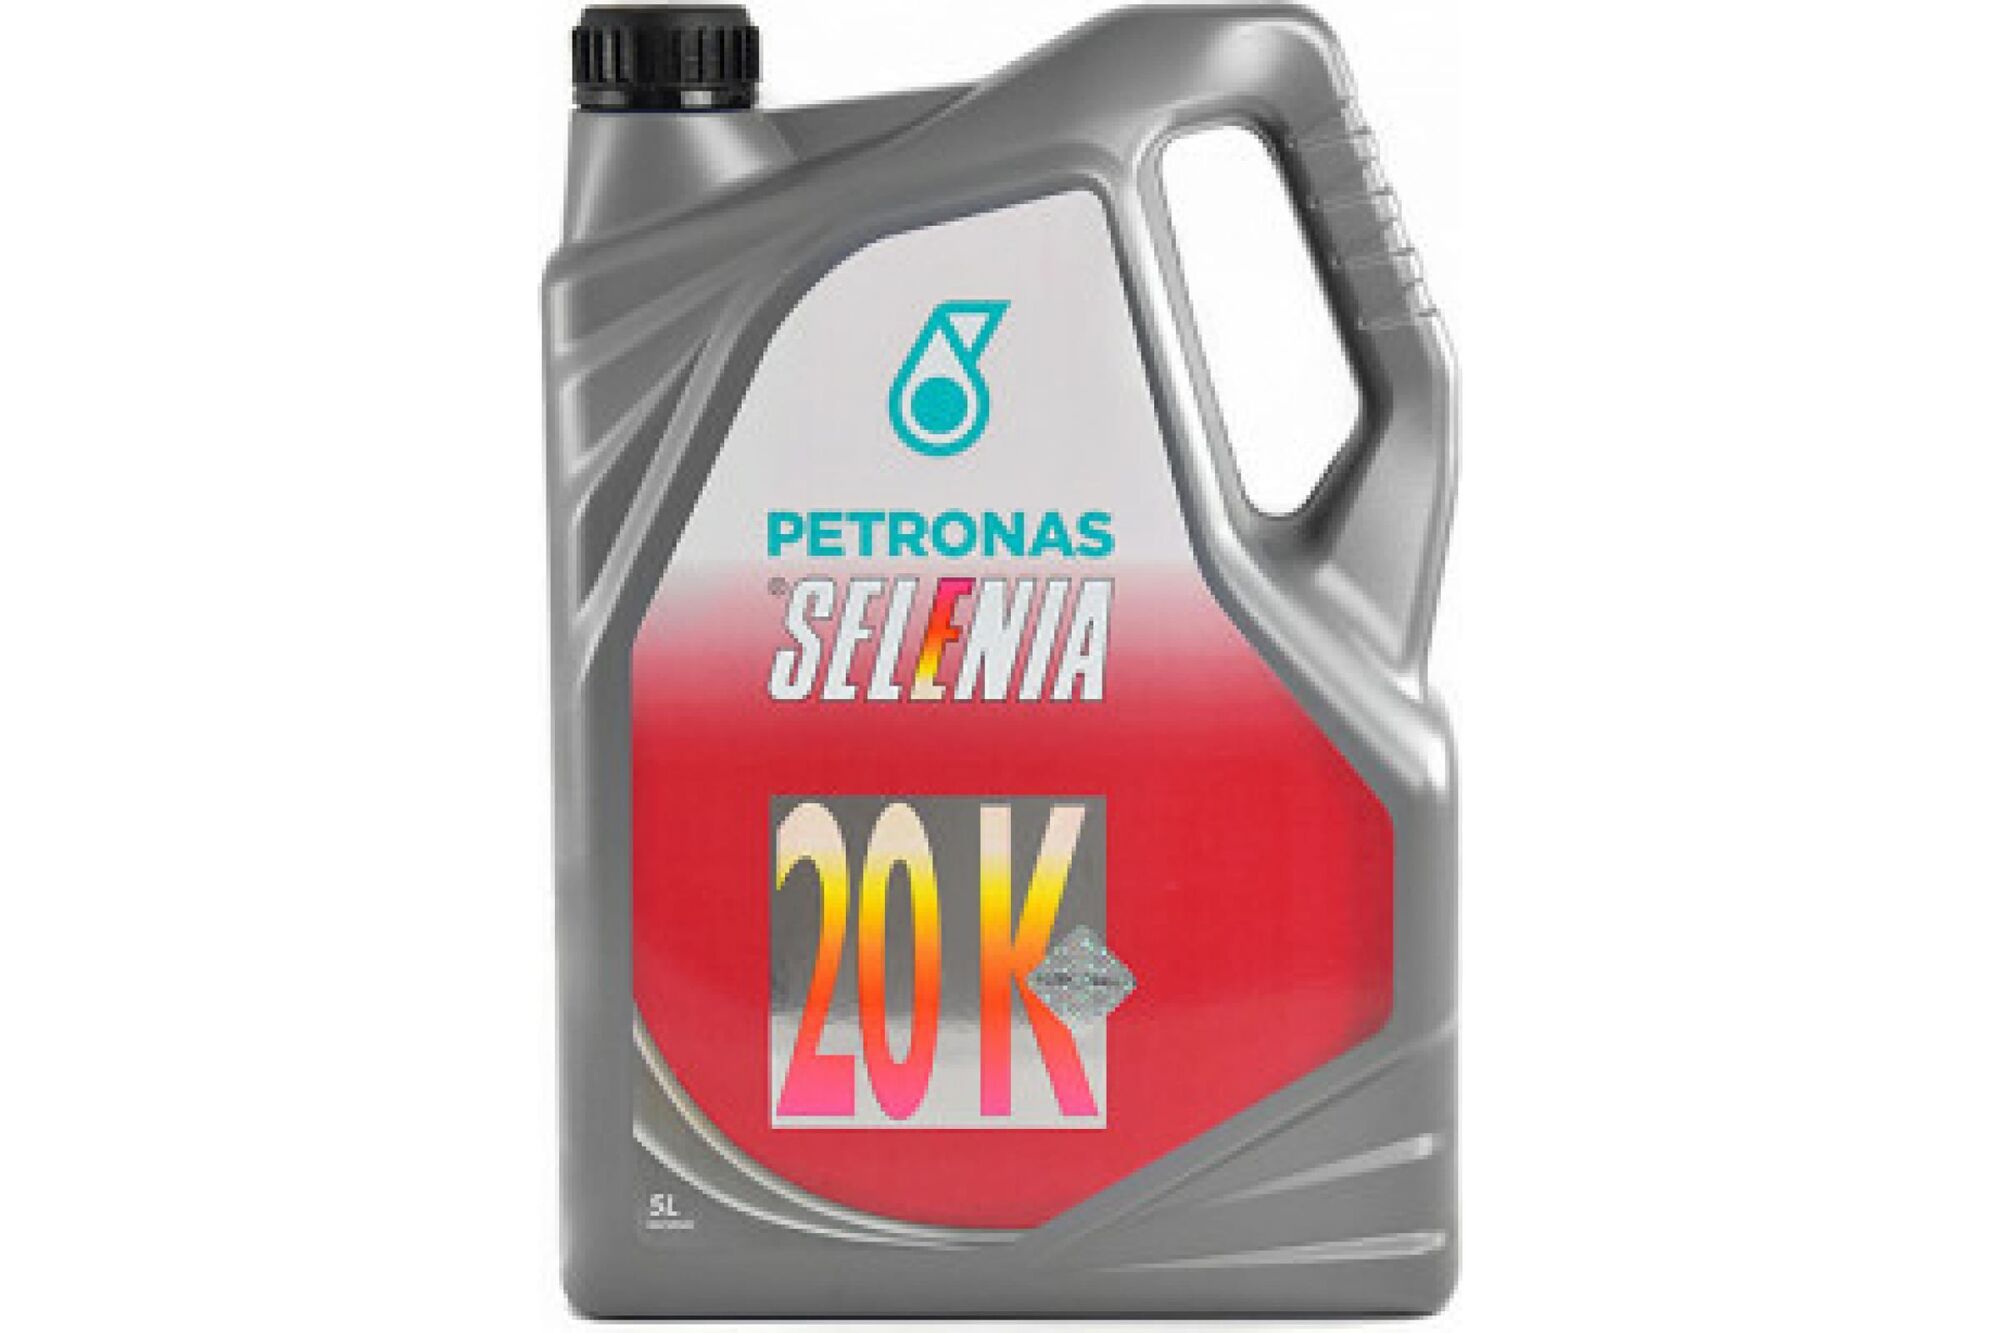 Моторное масло PETRONAS SELENIA 20 К полусинтетическое, 10W40, 5 л 70021M12EU Petronas